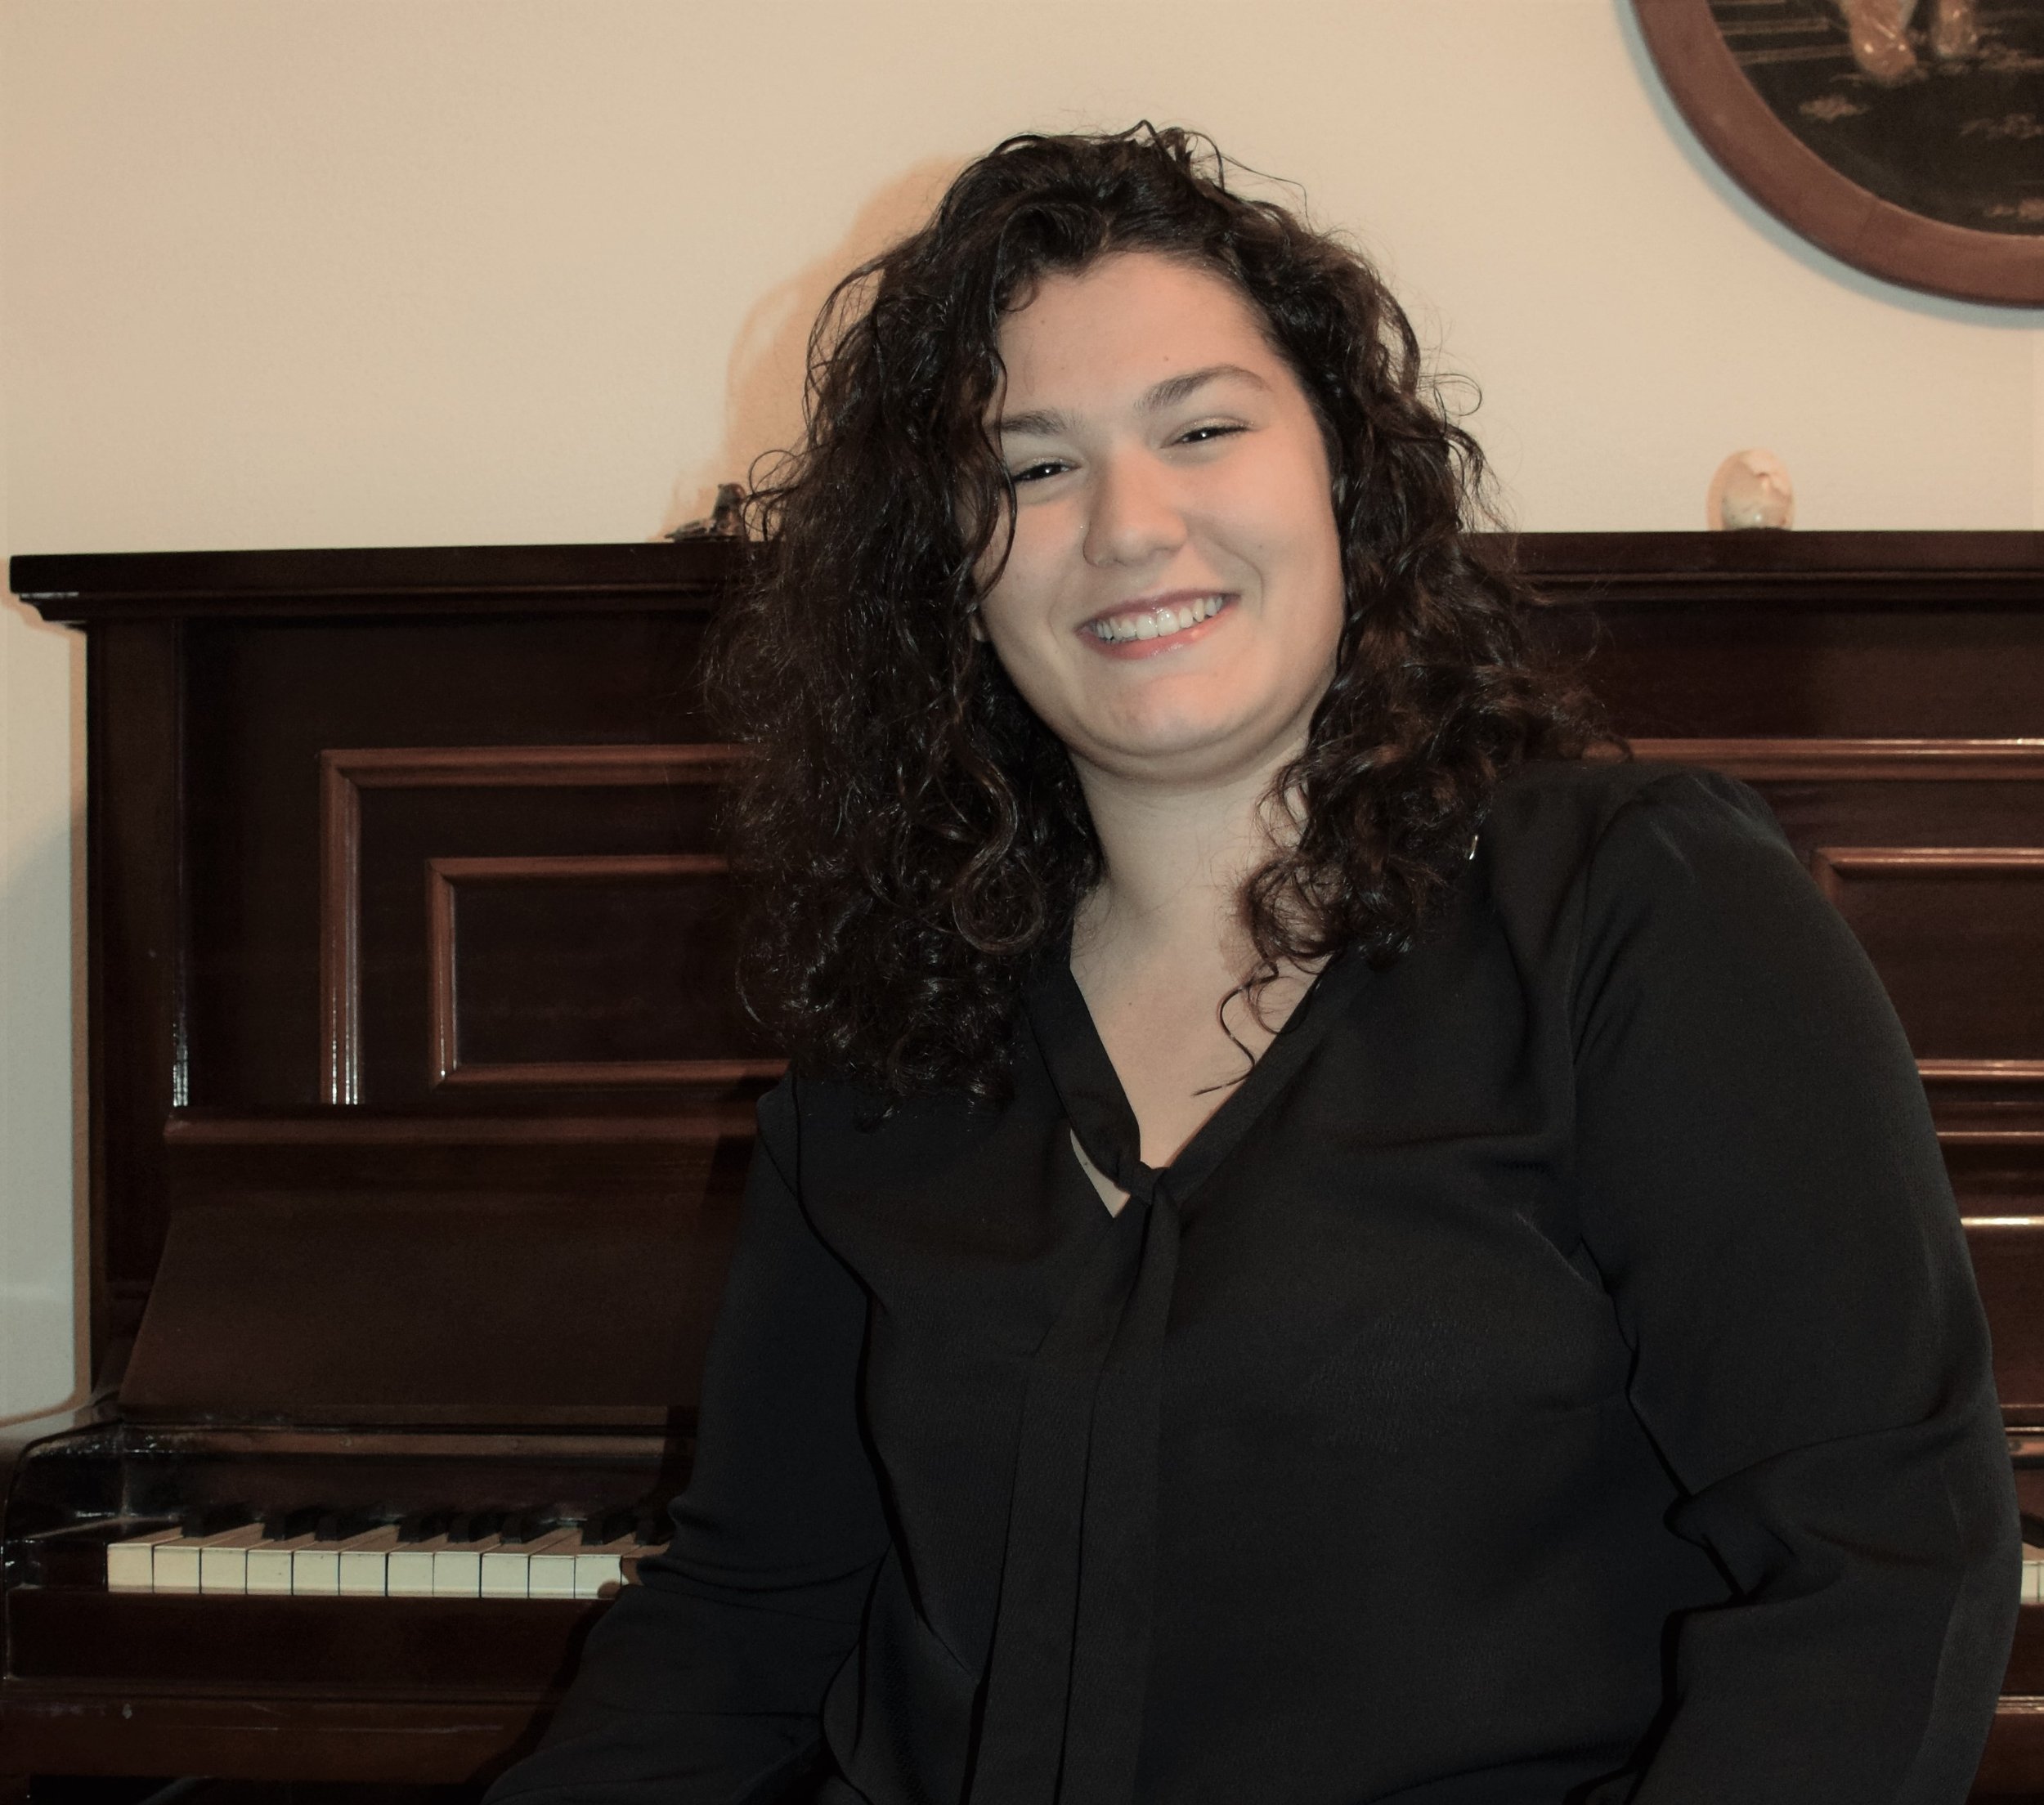 Letizia: Online Piano Teacher — Teachers Connect